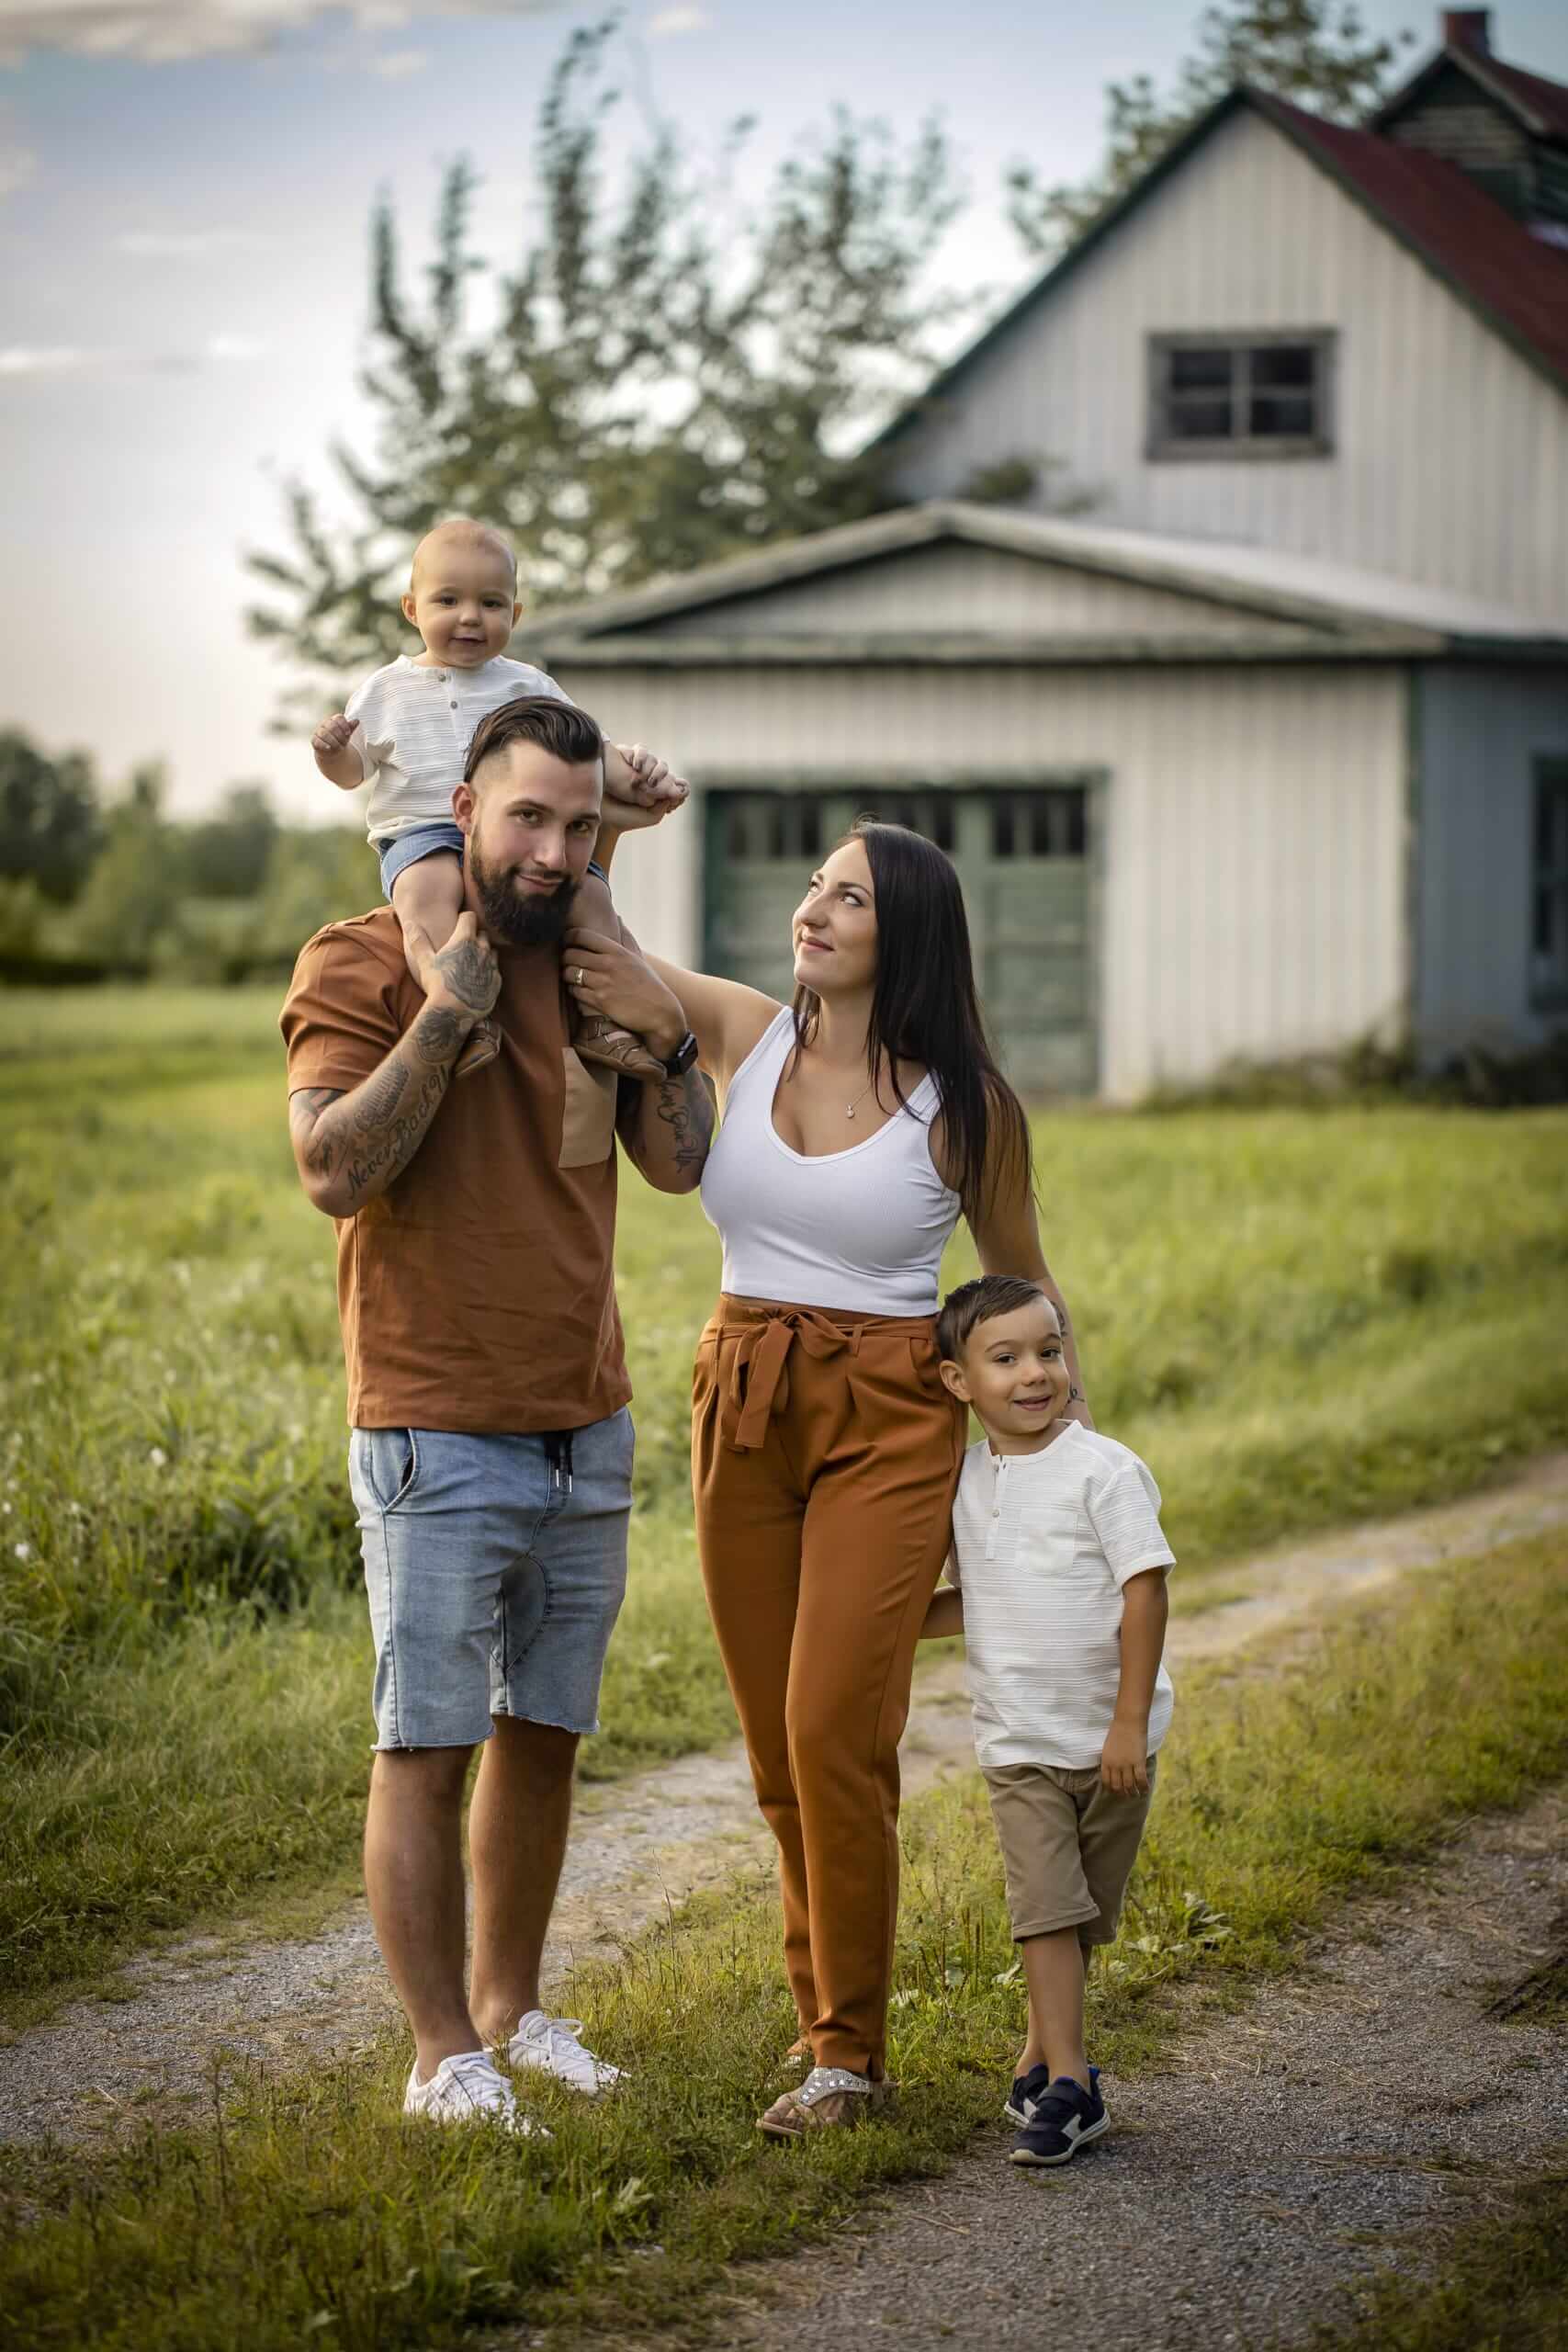 Un photographe capture des photos d'une famille posant devant une grange.